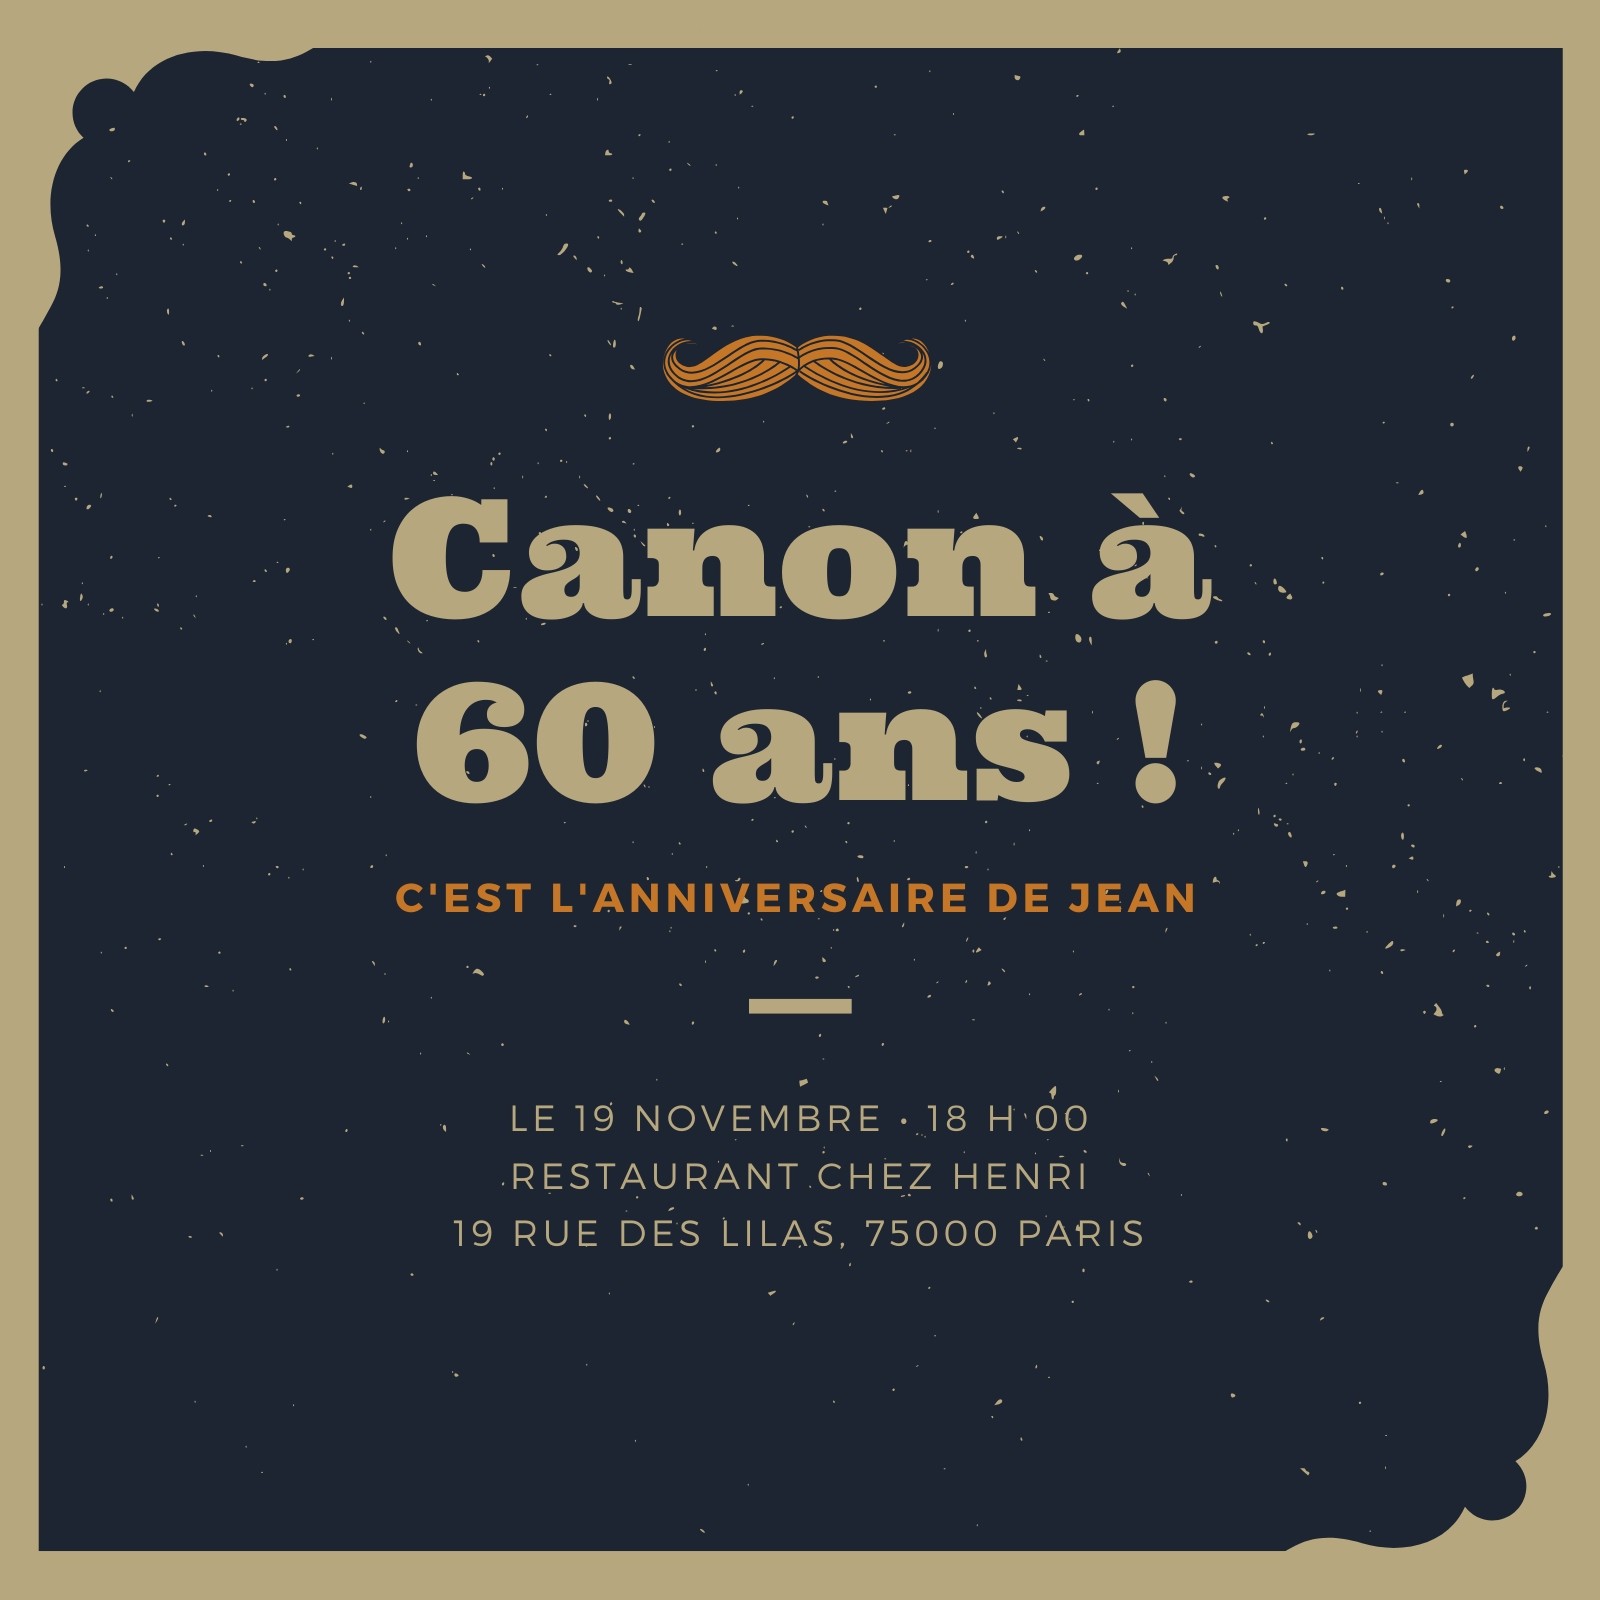 https://marketplace.canva.com/EADtglT_UKw/1/0/1600w/canva-fonc%C3%A9-ardoise-et-marron-moustache-60e-anniversaire-invitation-6ze3EL7gjZ4.jpg